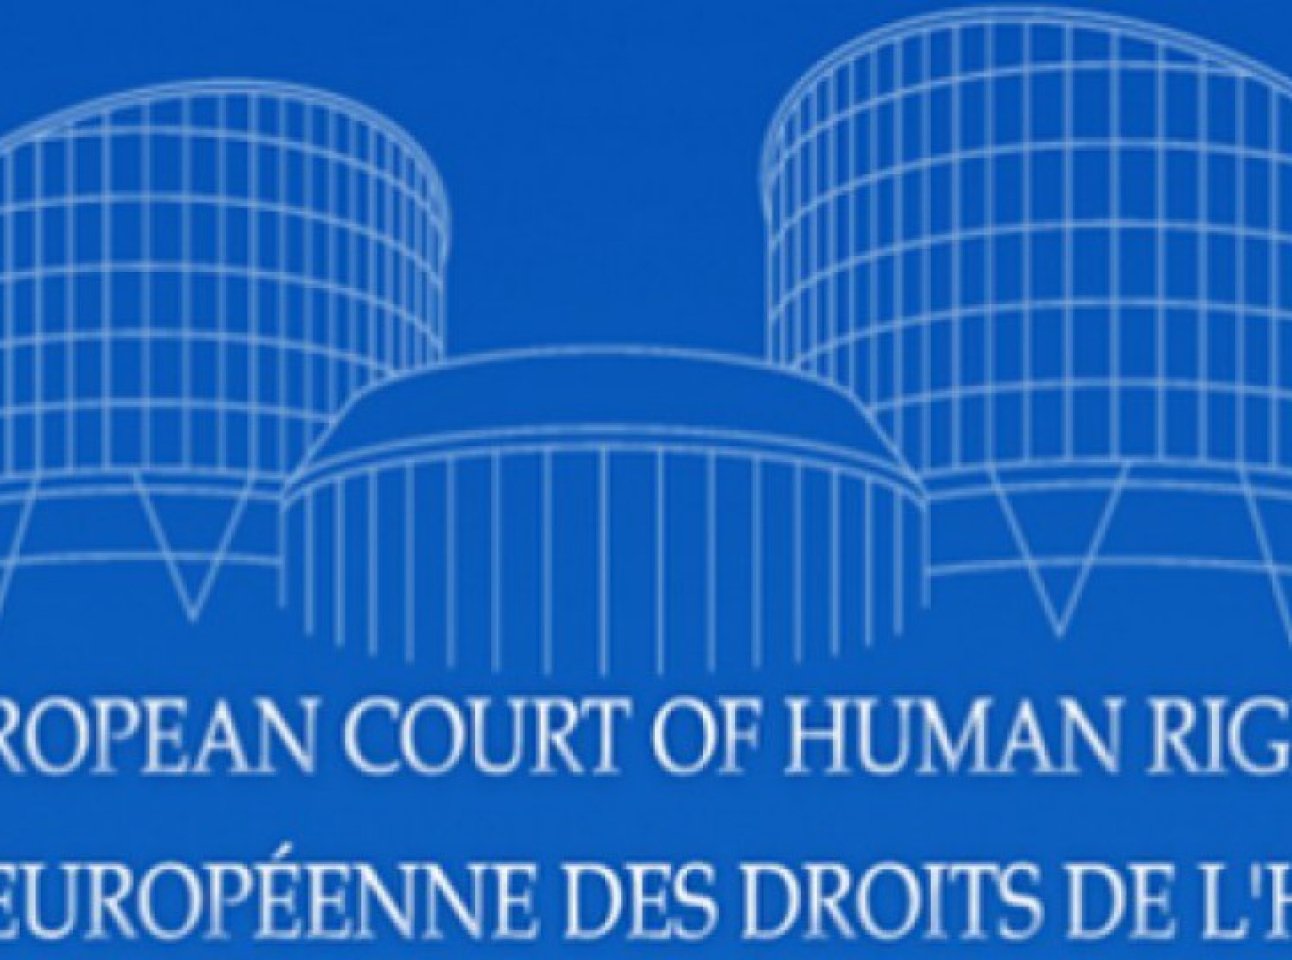 Европейский суд по правам человека рф. Европейский суд по правам человека г.Страсбург. Европейский суд по правам человека в Страсбурге (1984). Европейский суд по правам человека эмблема. Еврейский суд по правам человека.